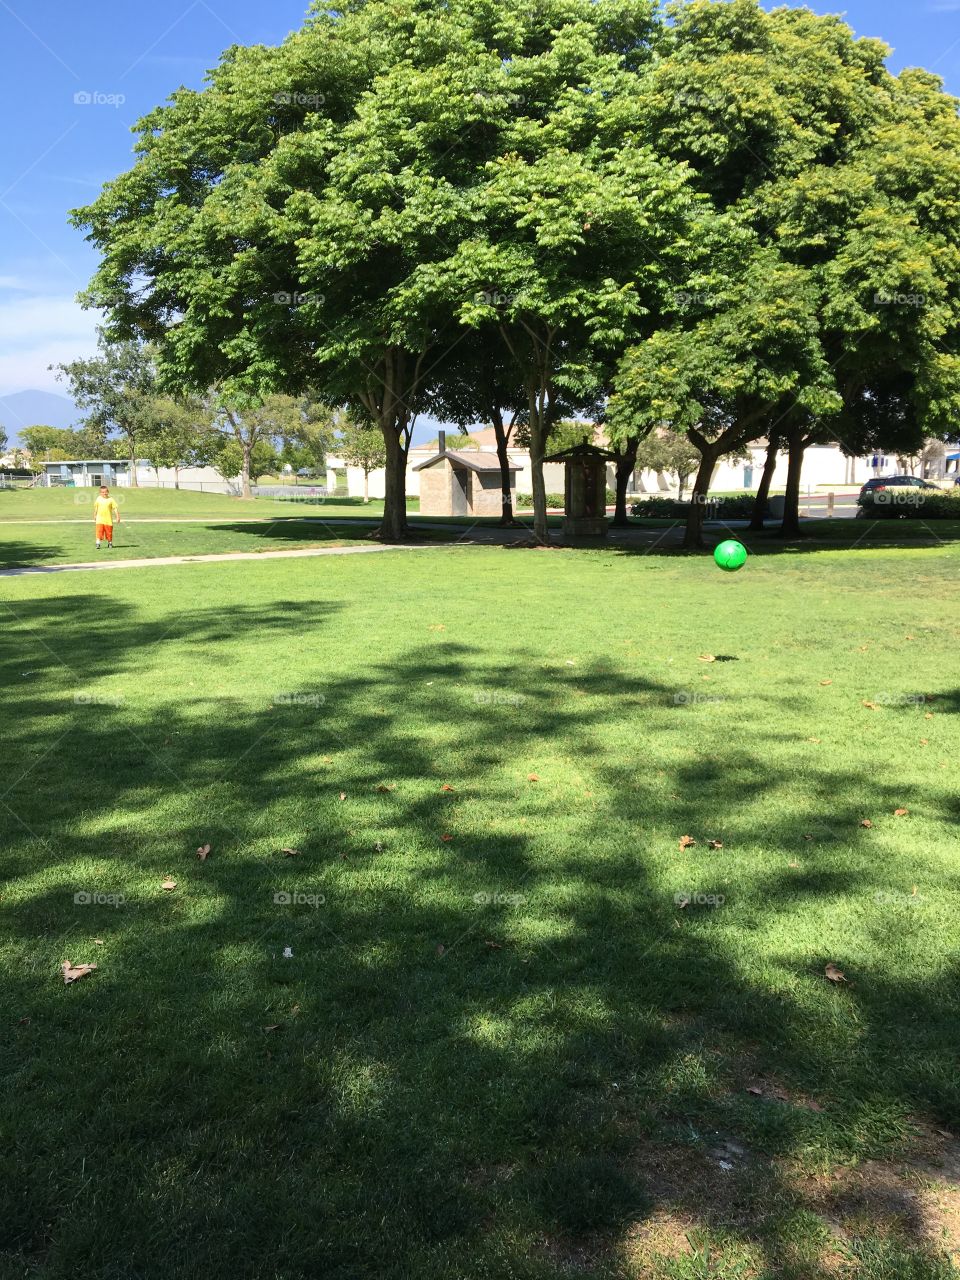 Tree, Grass, No Person, Landscape, Lawn